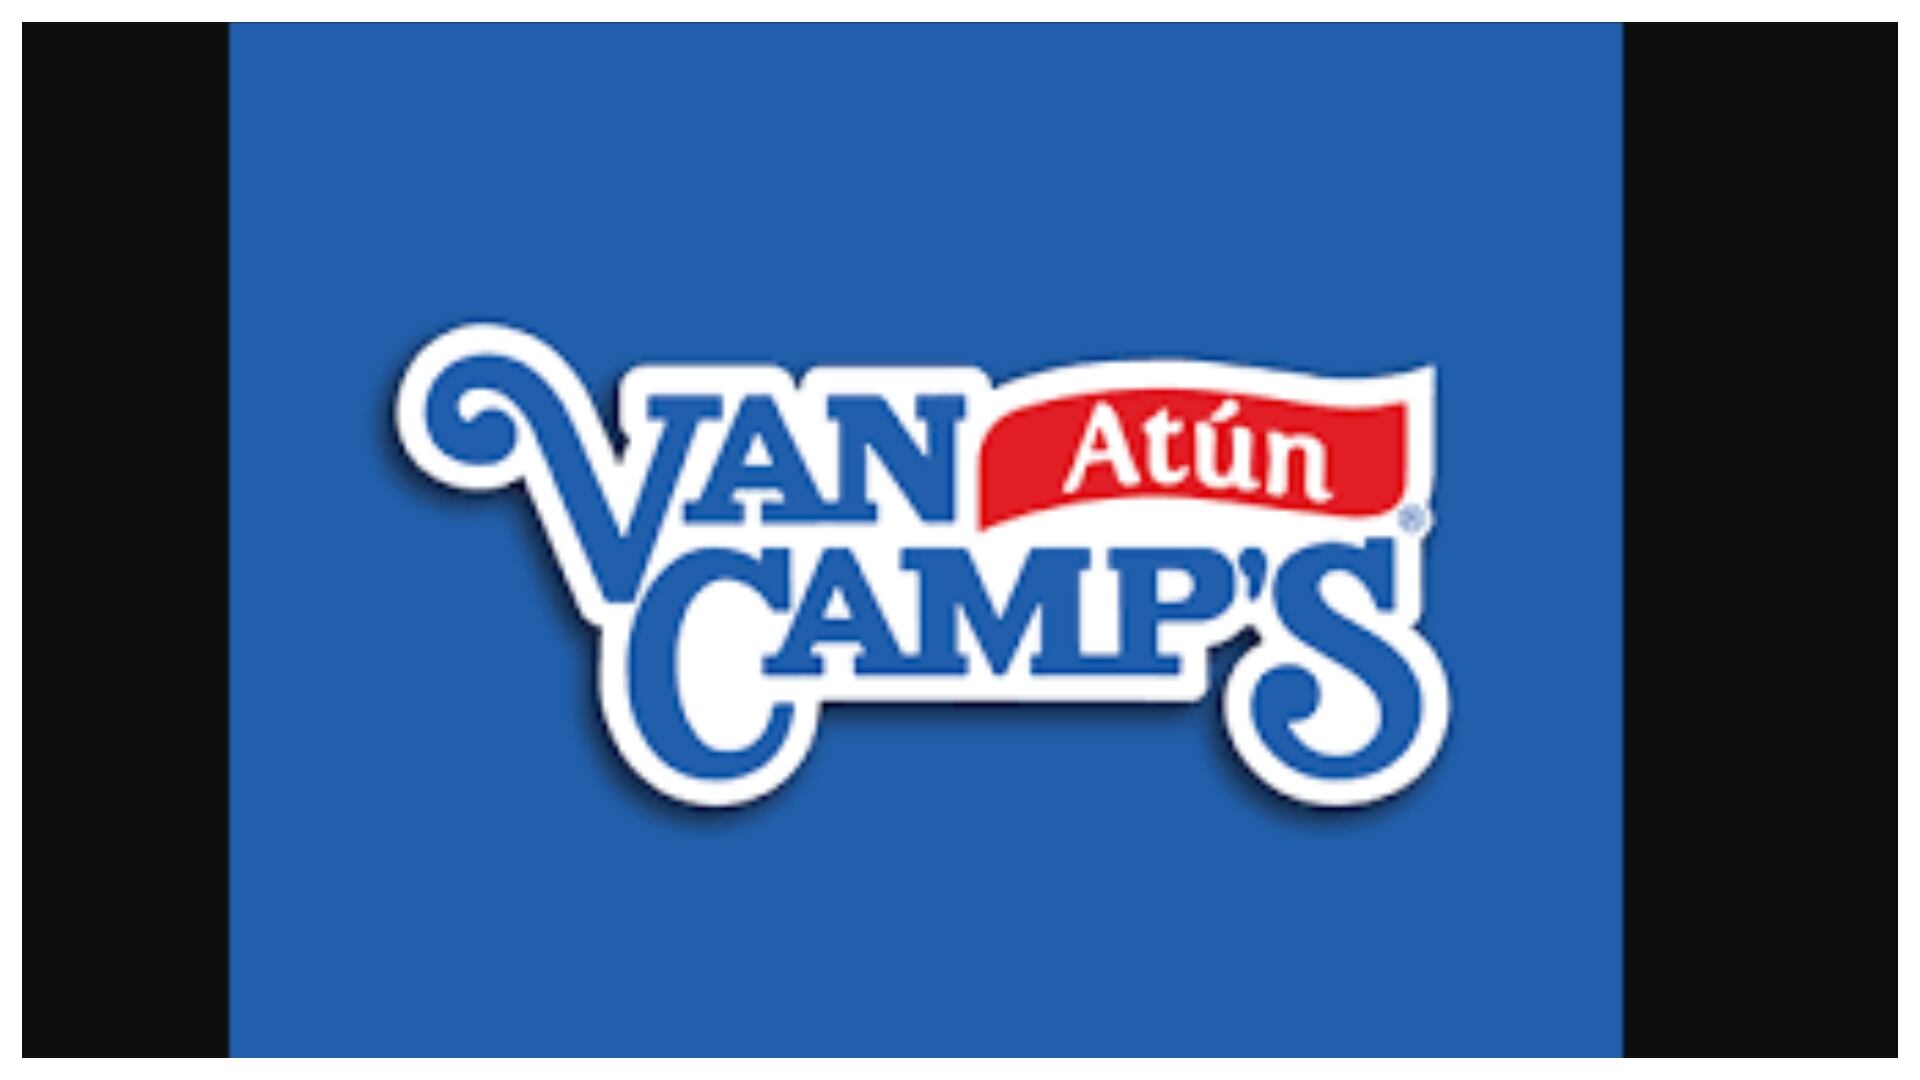 Abogado se pronunció sobre el caso Van Camp's que obligaría a sus empleadas a usar pañal (Imagen de referencia: Logo de Van Camp's )